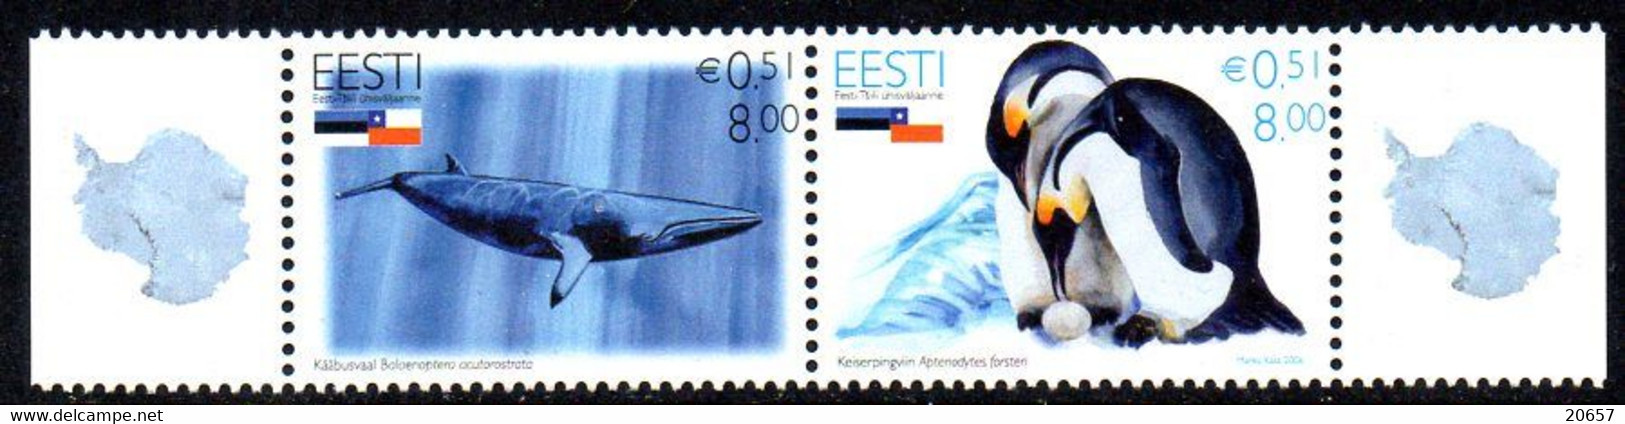 Estonie Eesti 0531/32 Antarctique, Baleine, Pingouin - Faune Antarctique